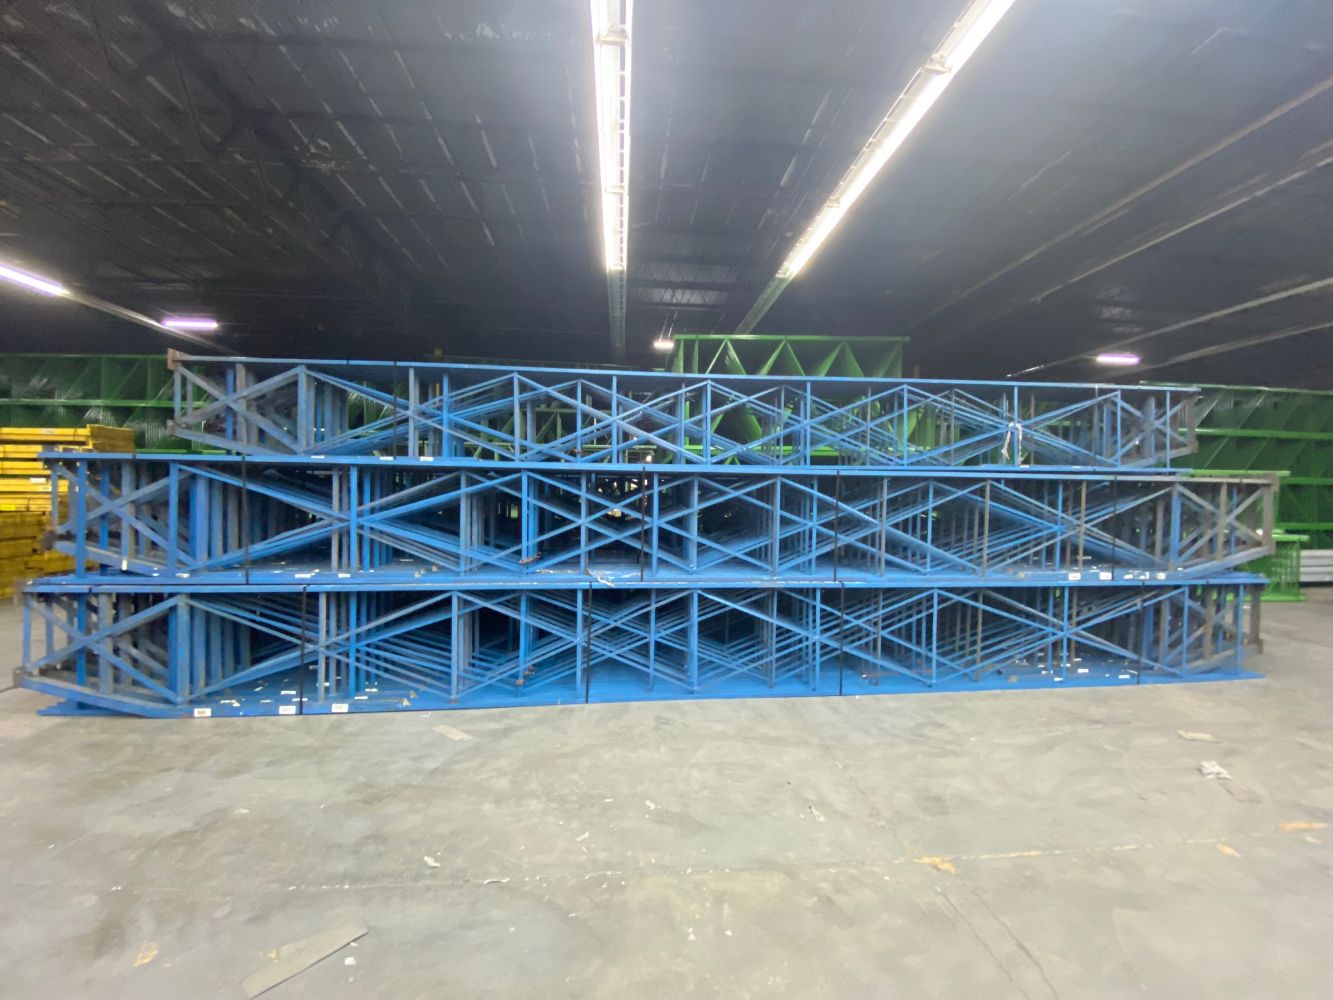 Pallet Rack, Metal Shelving, Forklift & Warehouse Equipment